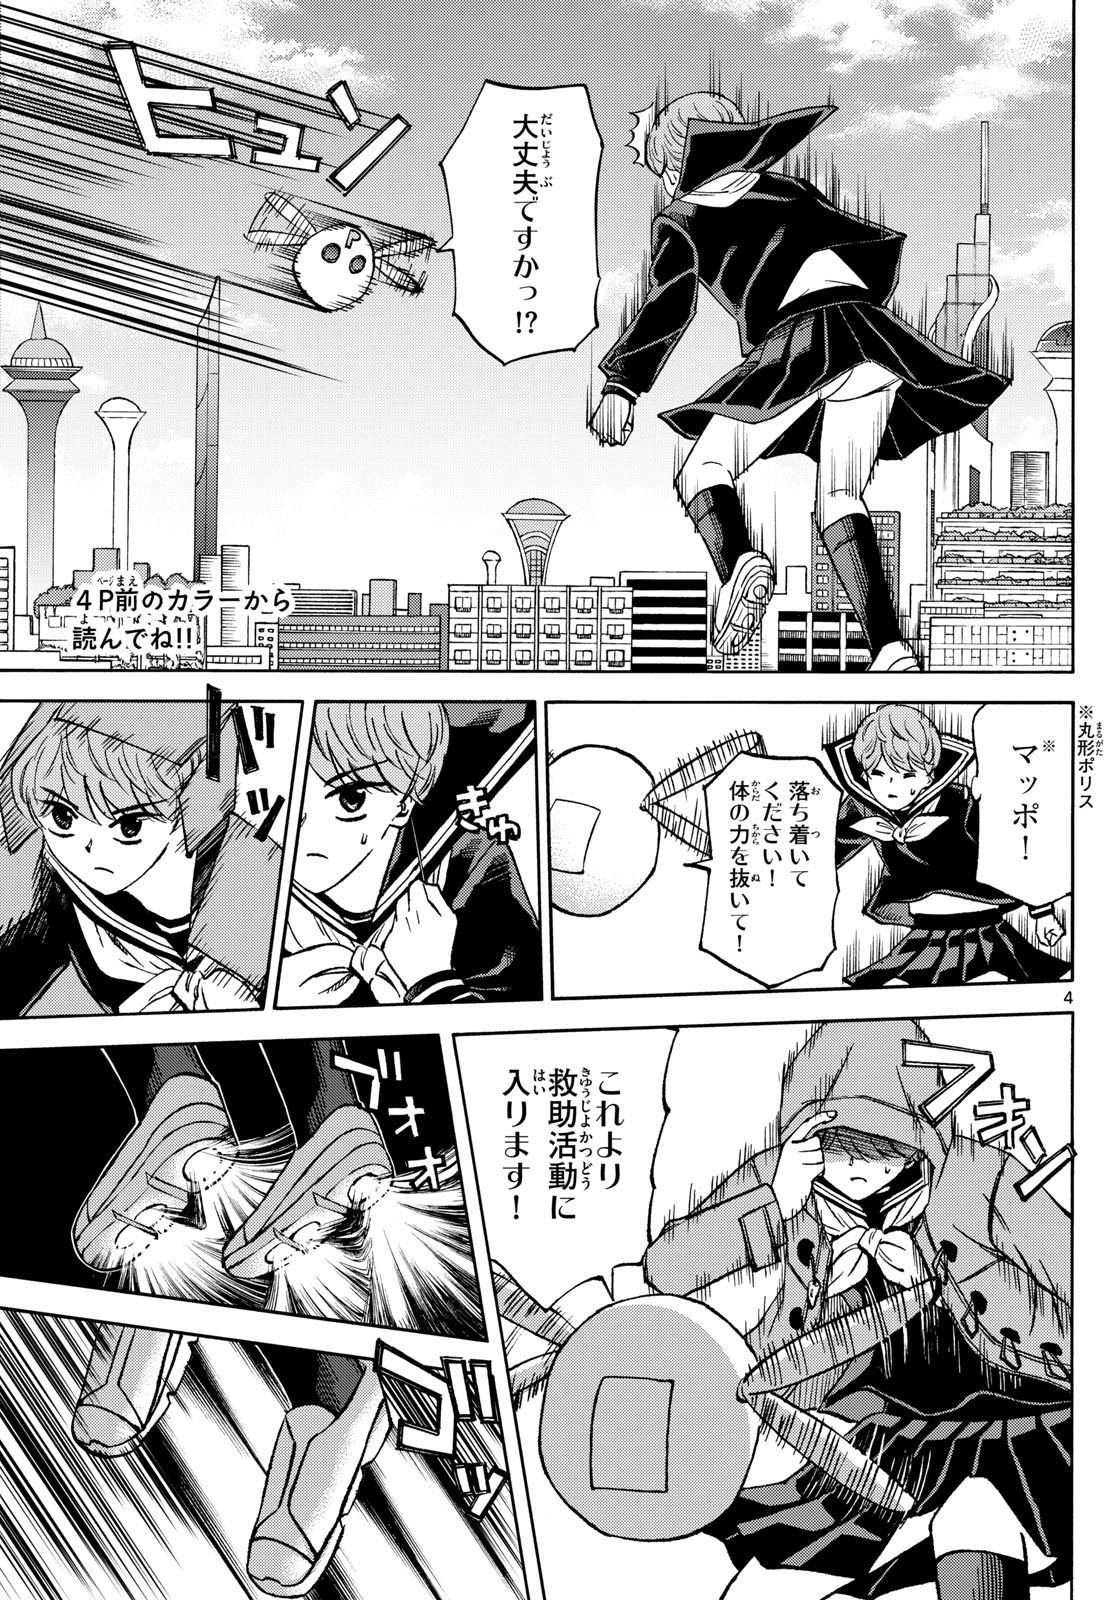 Ryu-to-Ichigo - Chapter 182 - Page 3